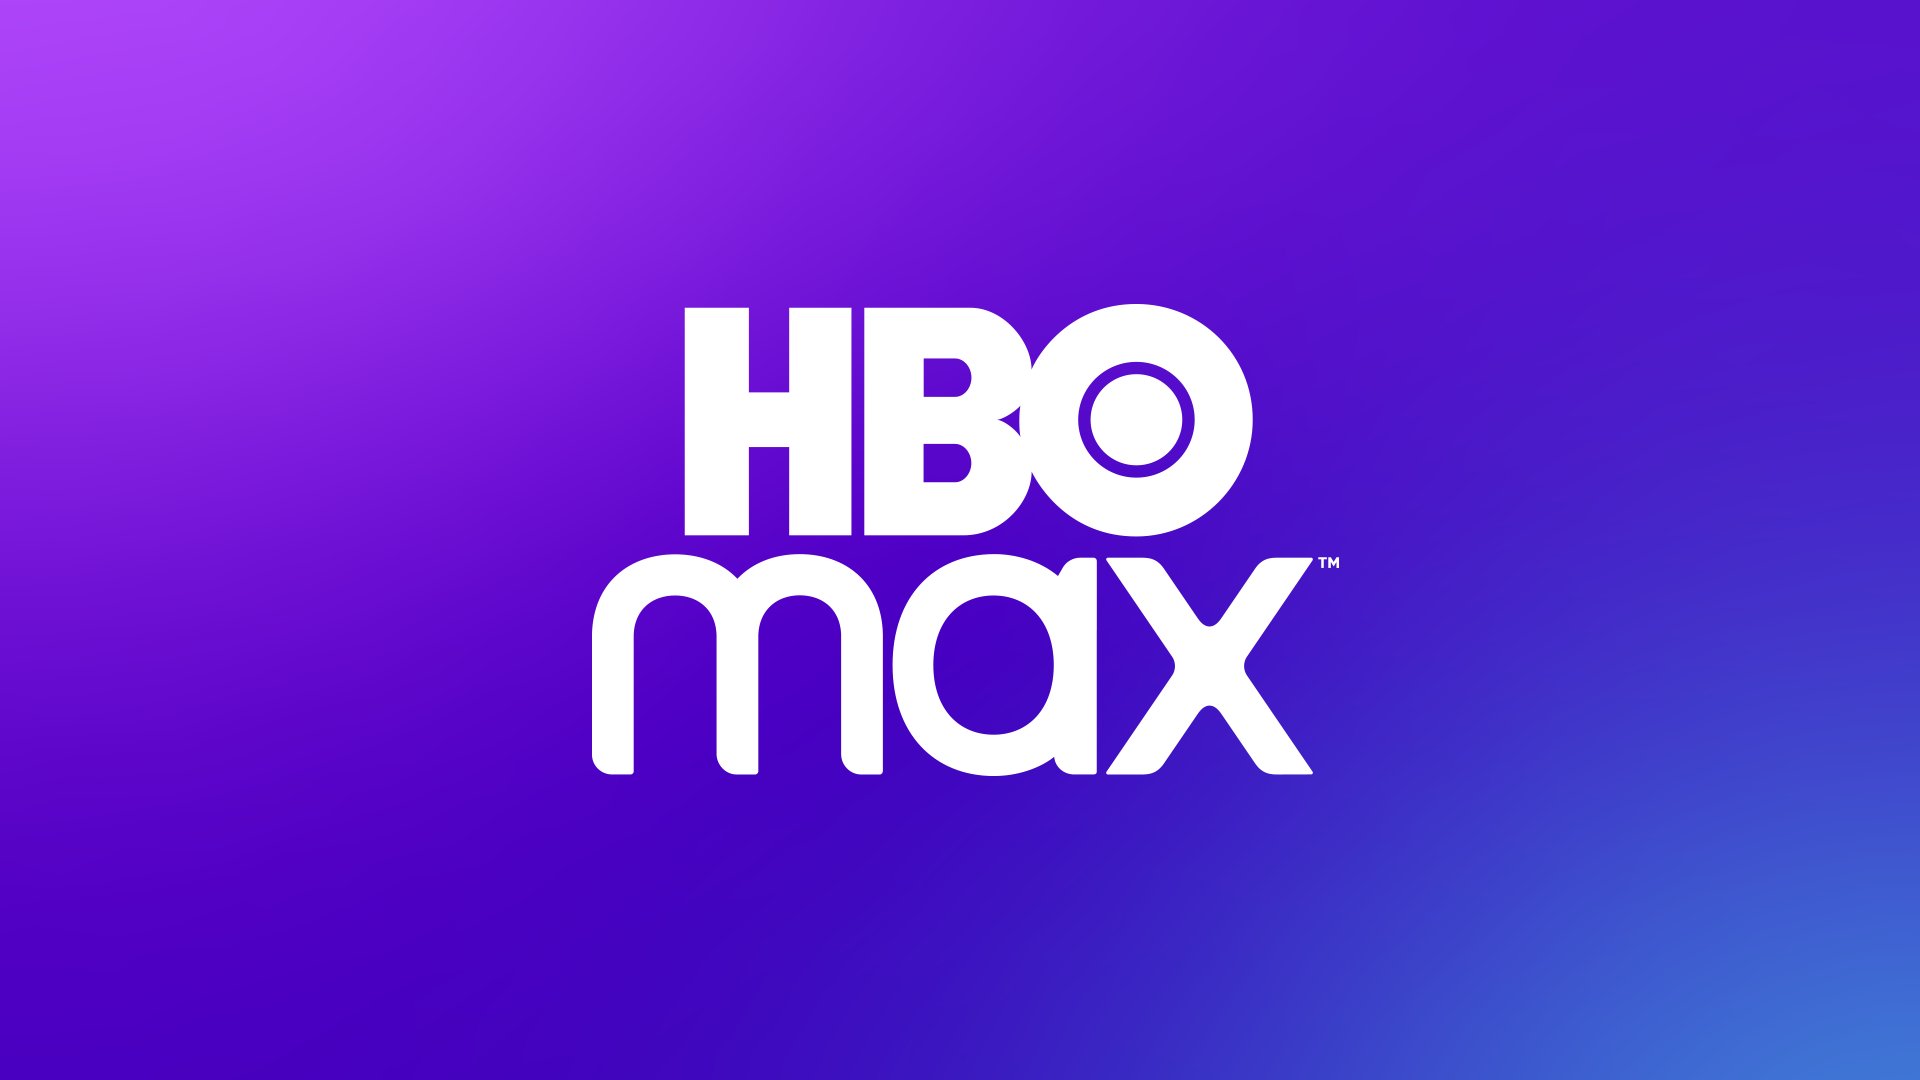 HBO Max anuncia plano de assinatura com valor reduzido